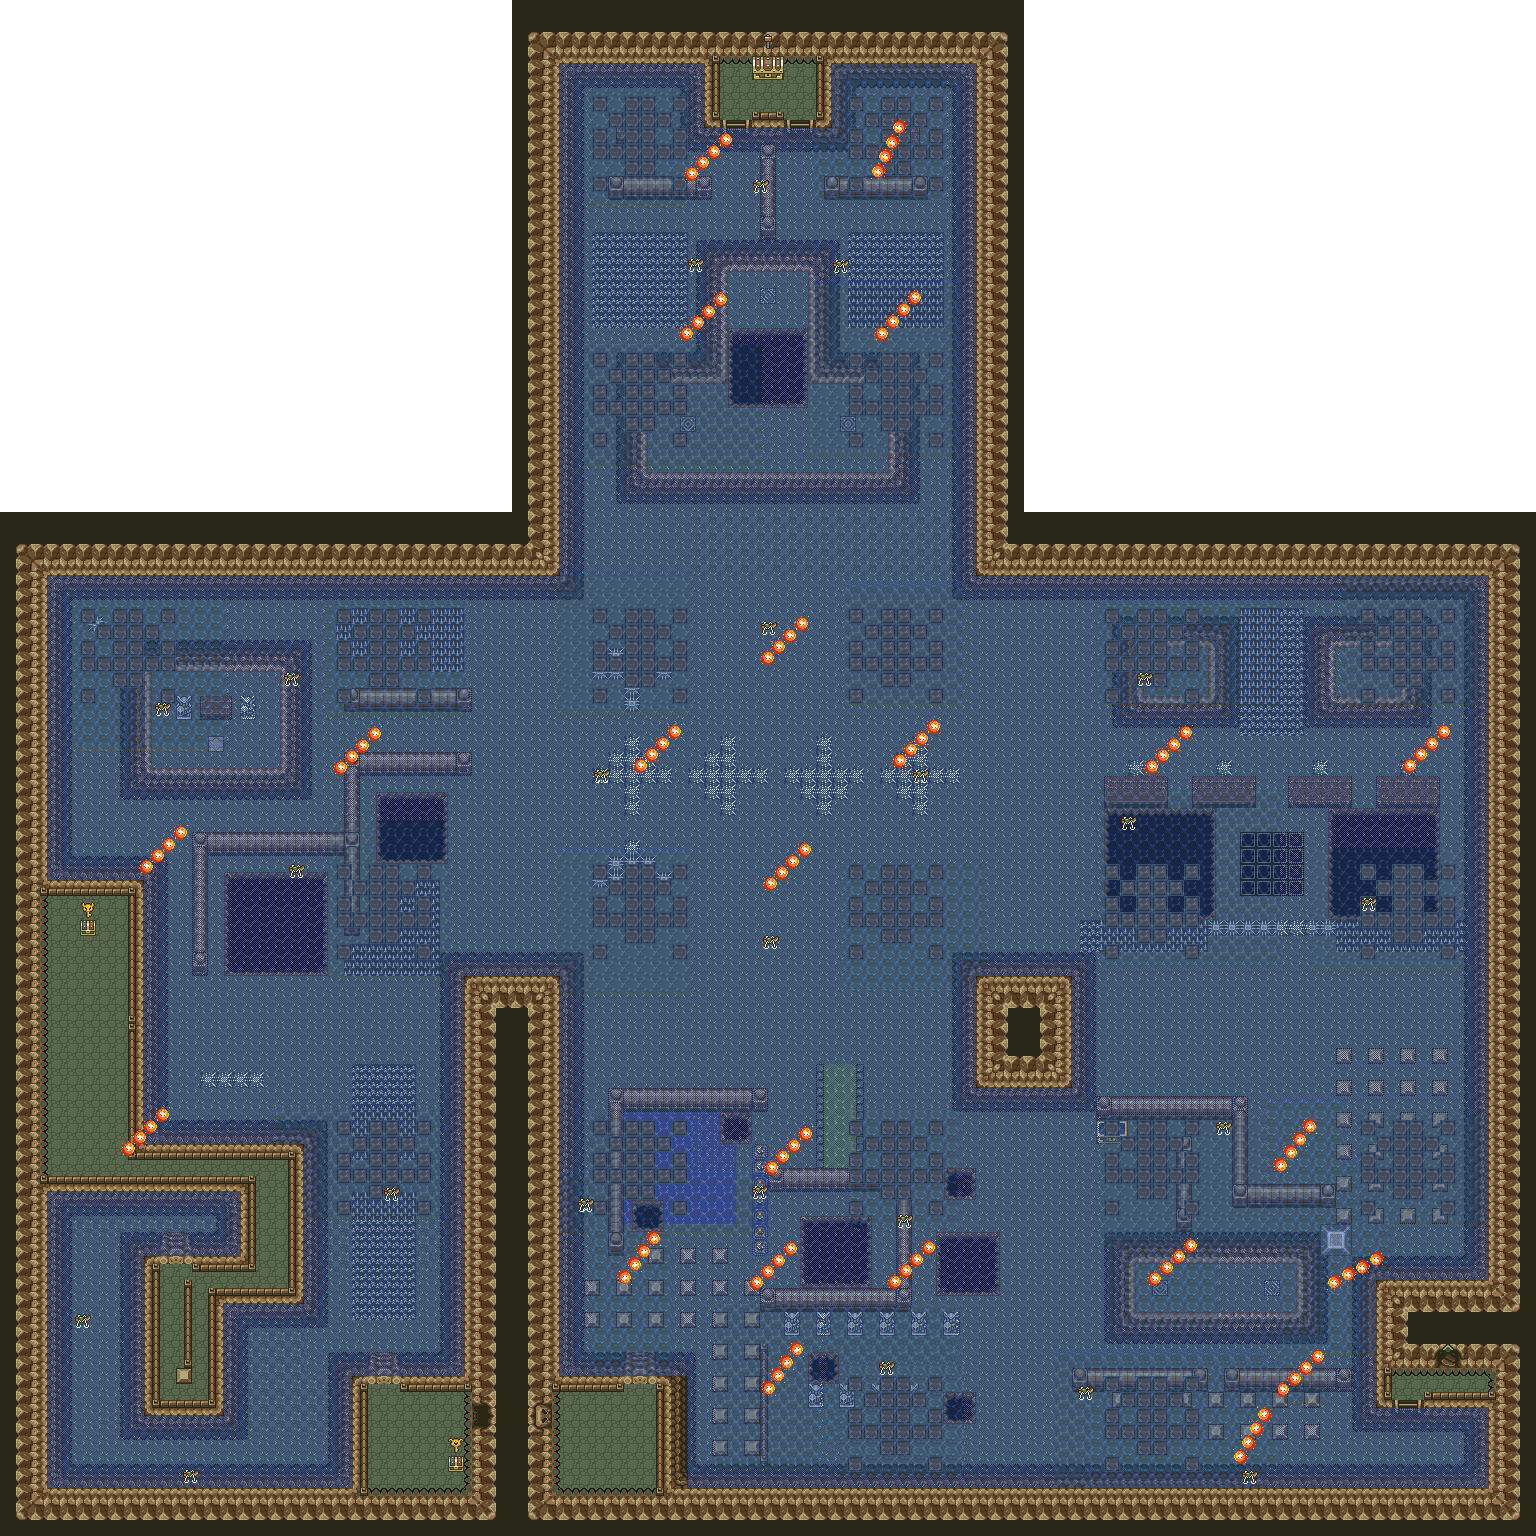 Legend of zelda parallel worlds map - aselinux